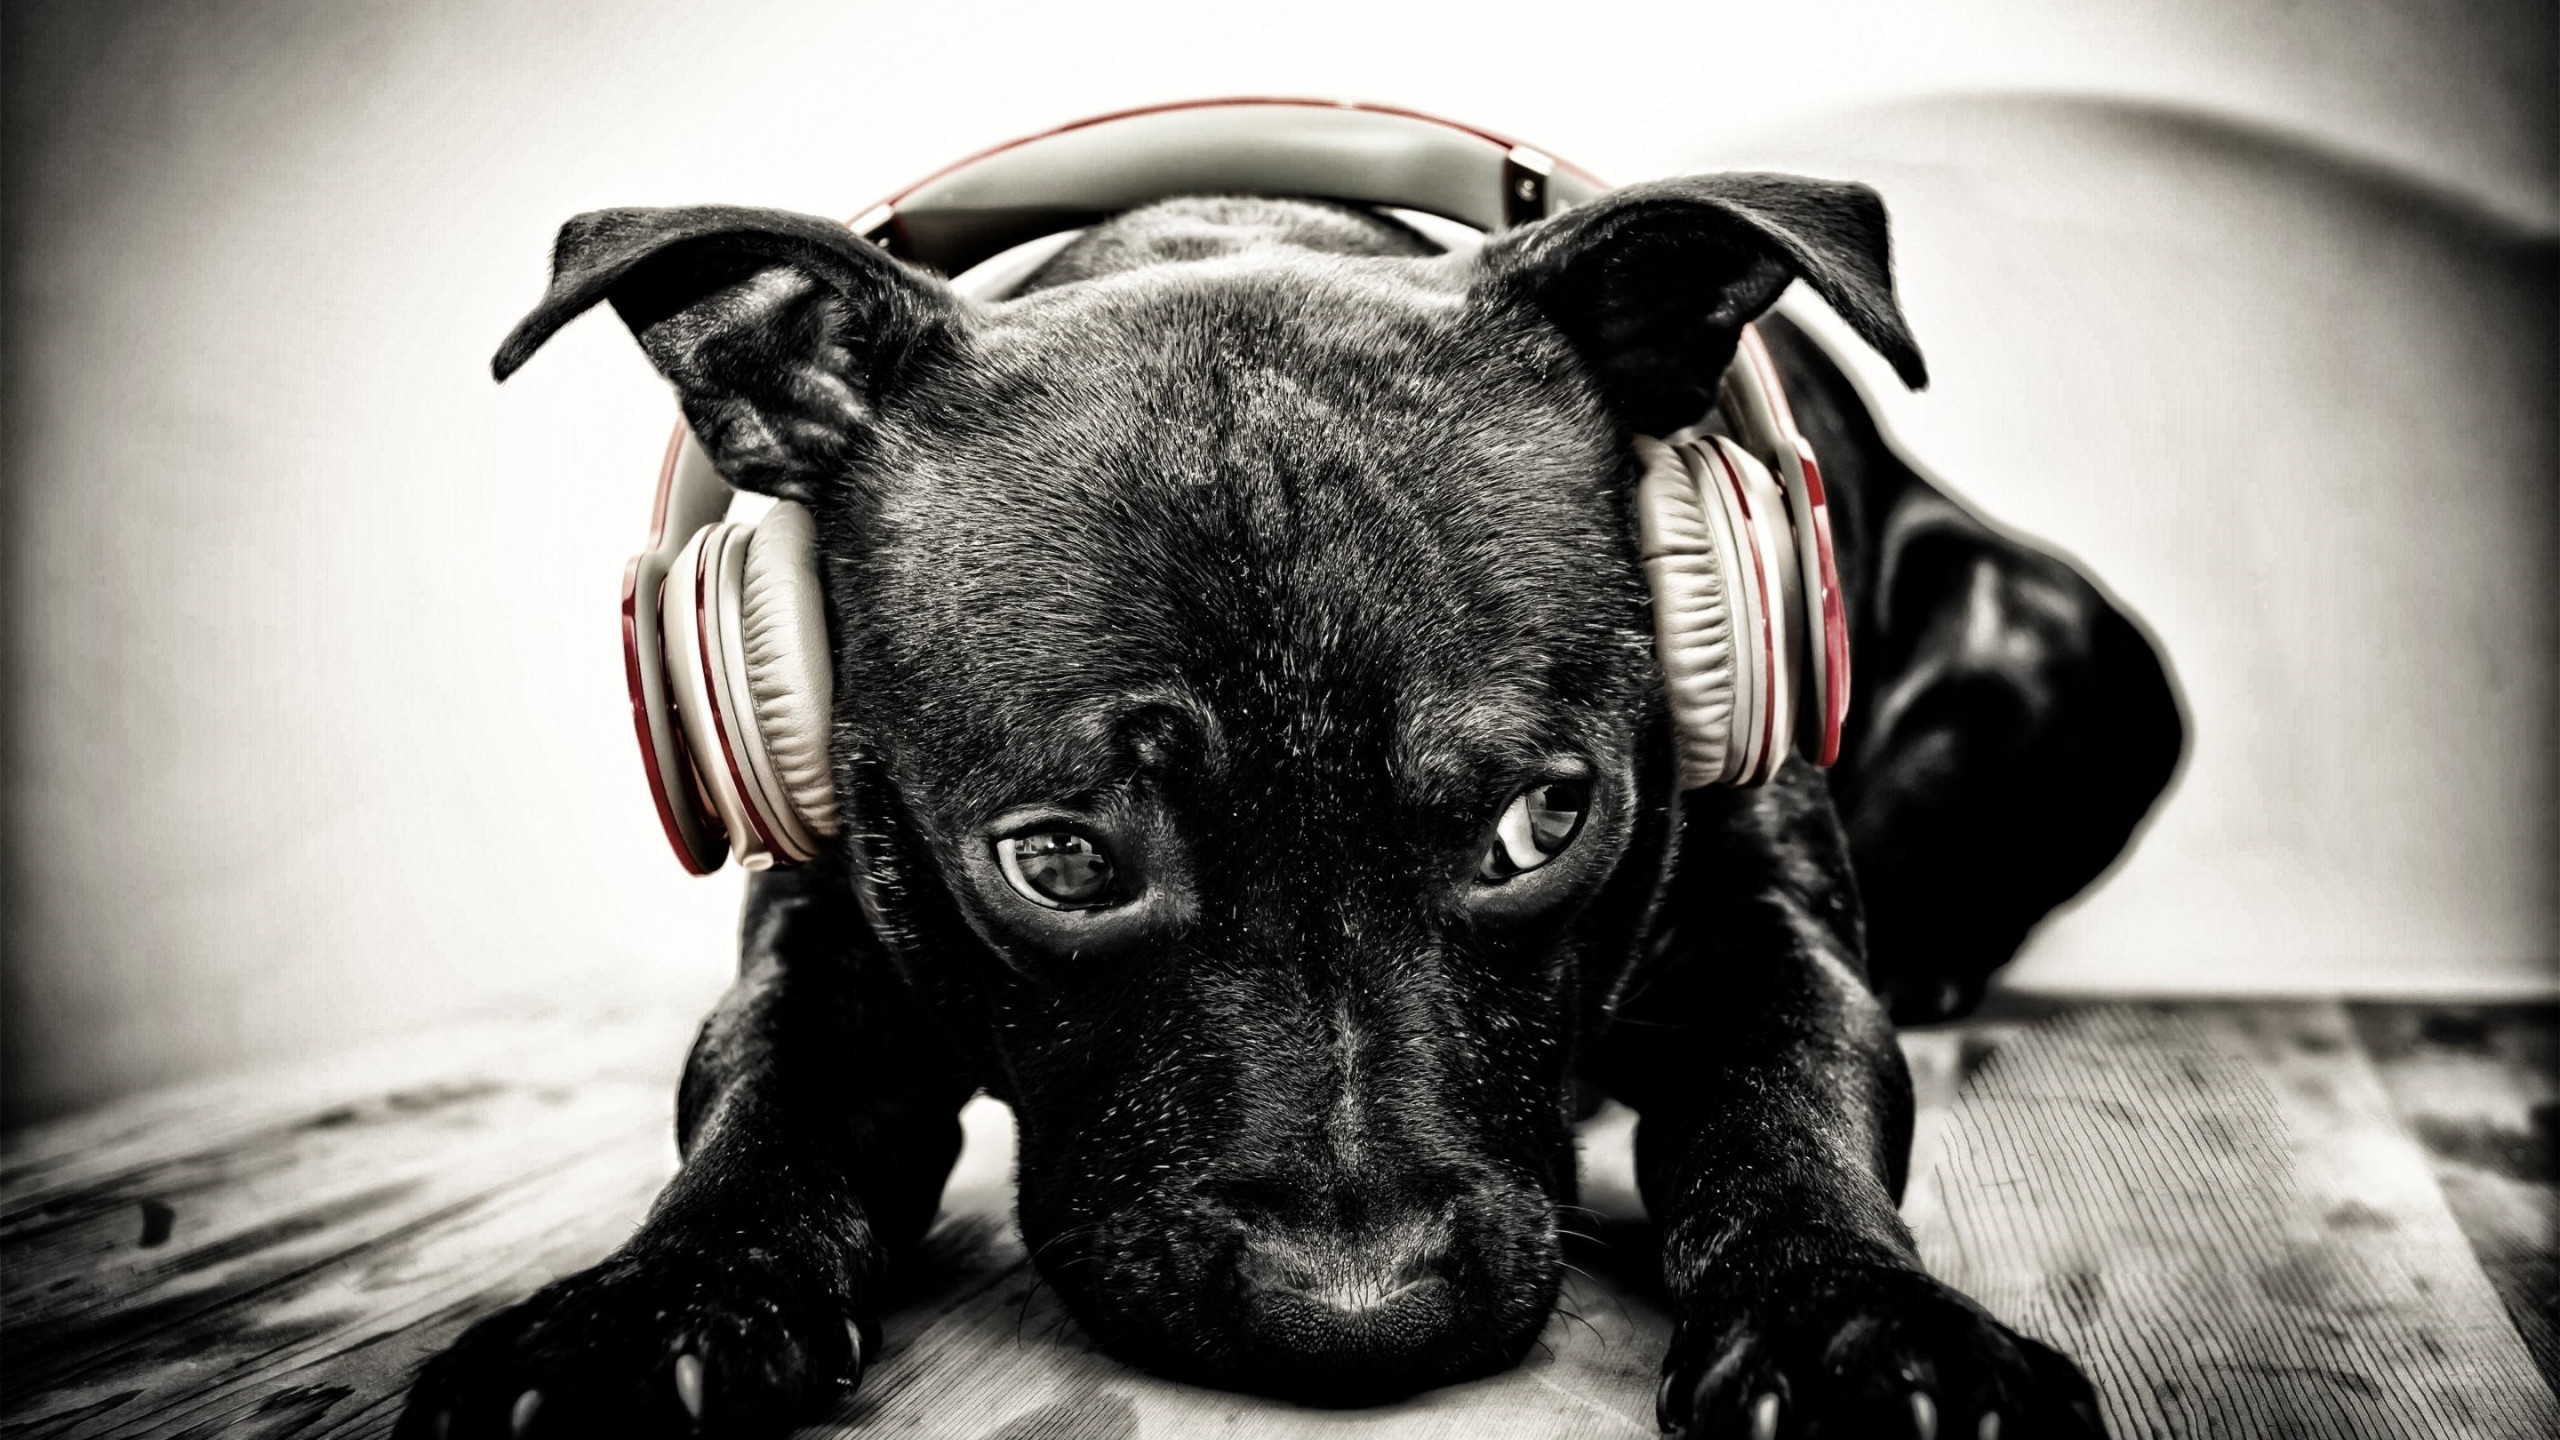 Puppy with beats headphones wallpaper 2560x1440